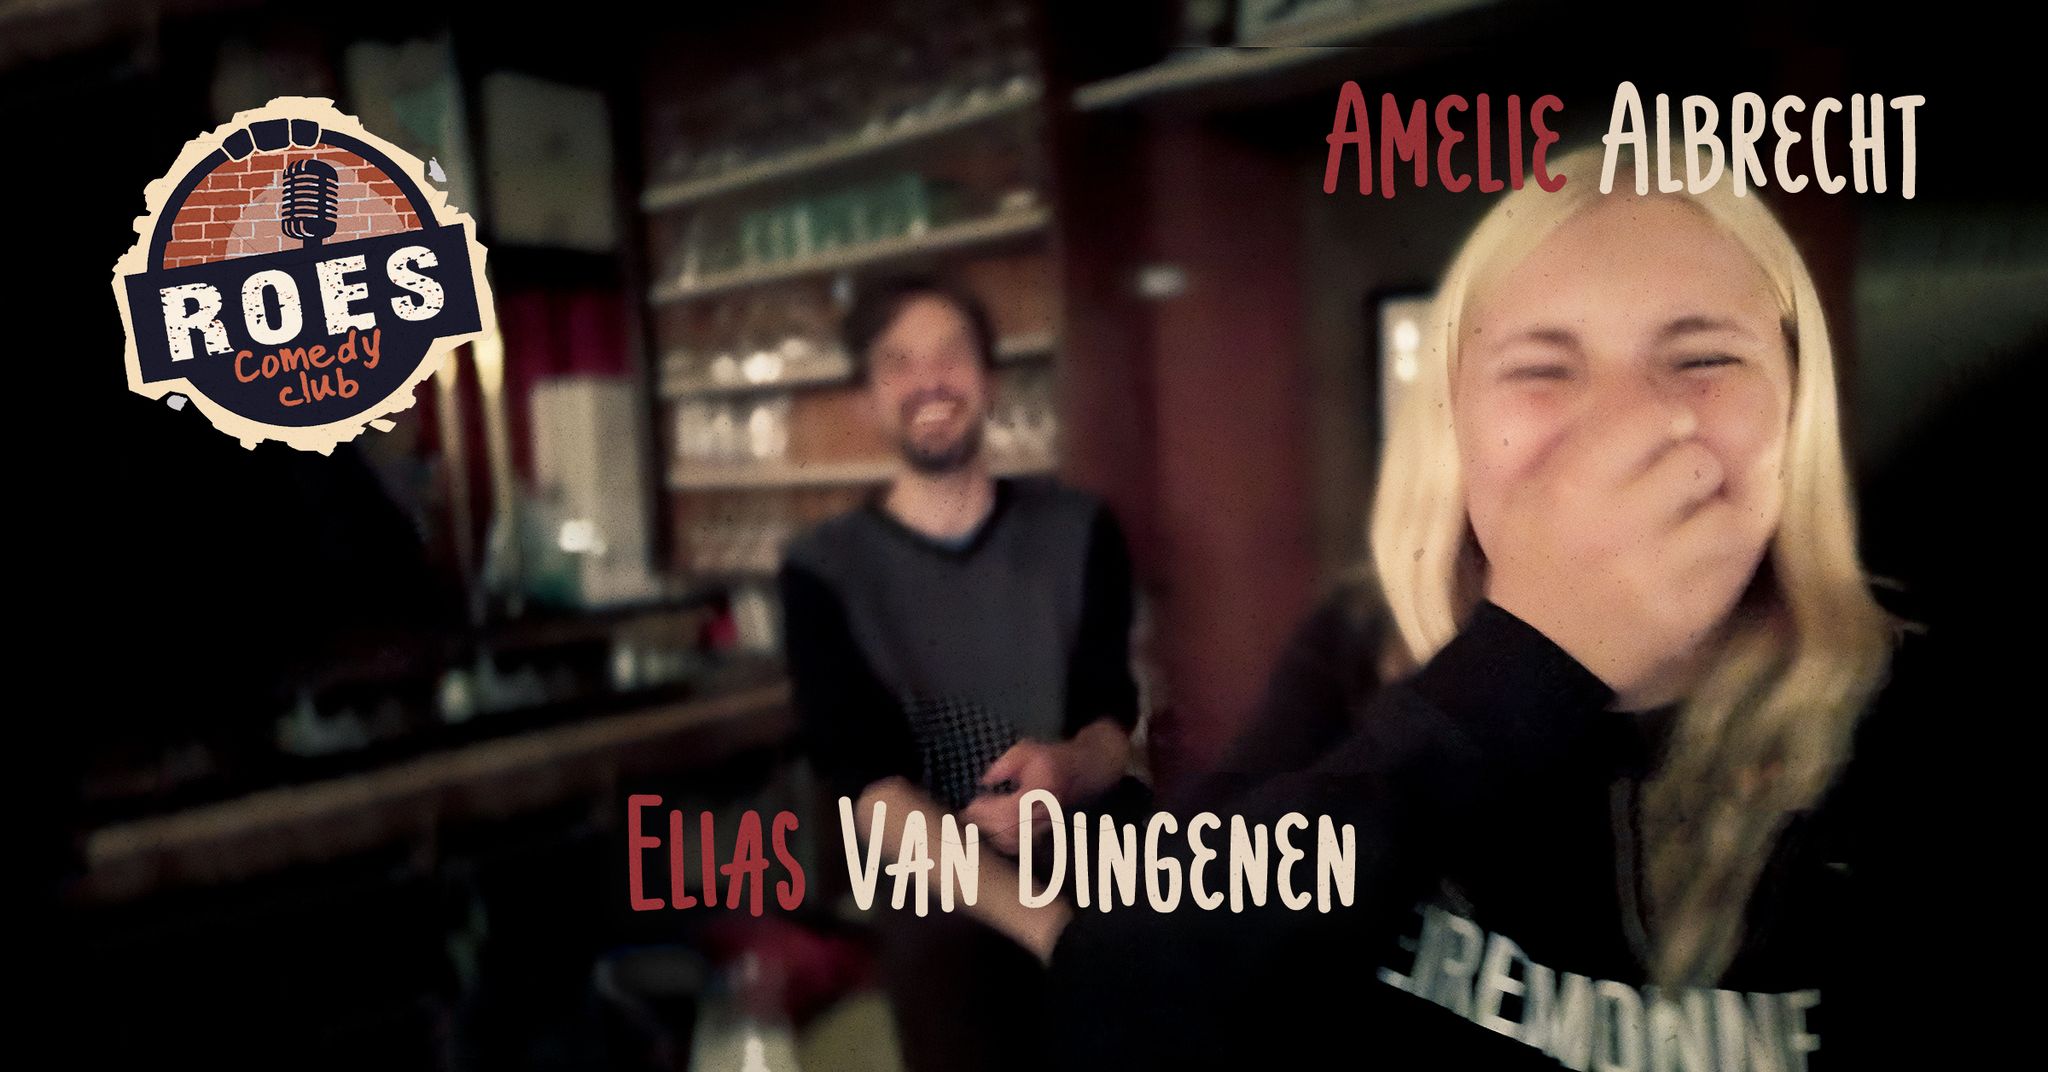 Ticket kopen voor evenement Roes Comedy Club: Elias Van Dingenen & Amelie Albrecht